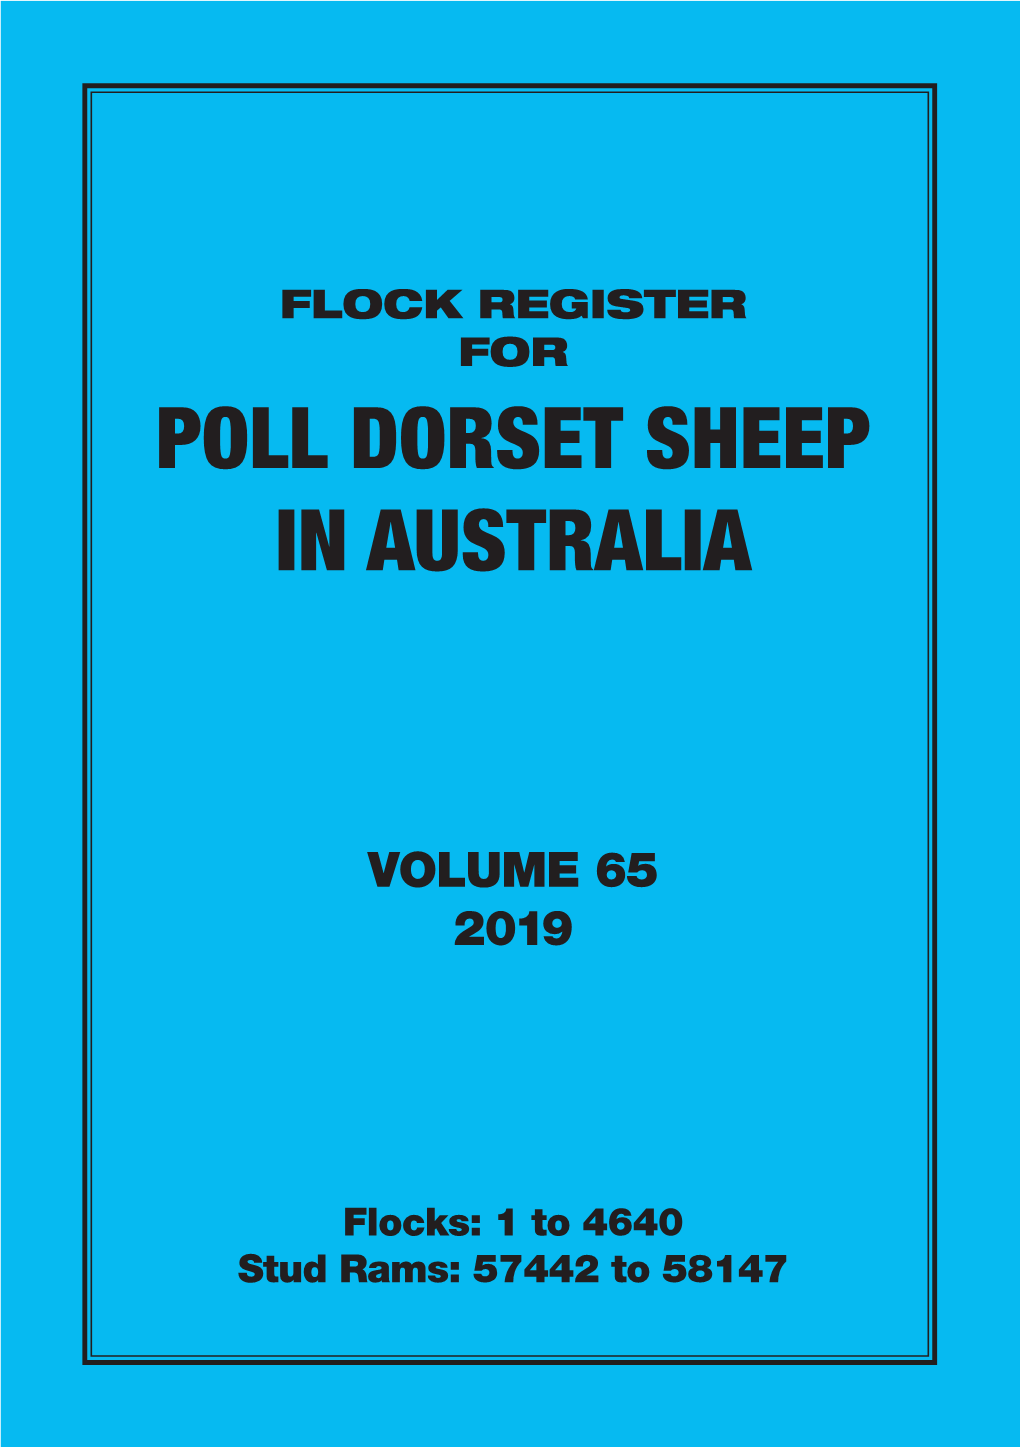 2019 Flock Register Vol 65